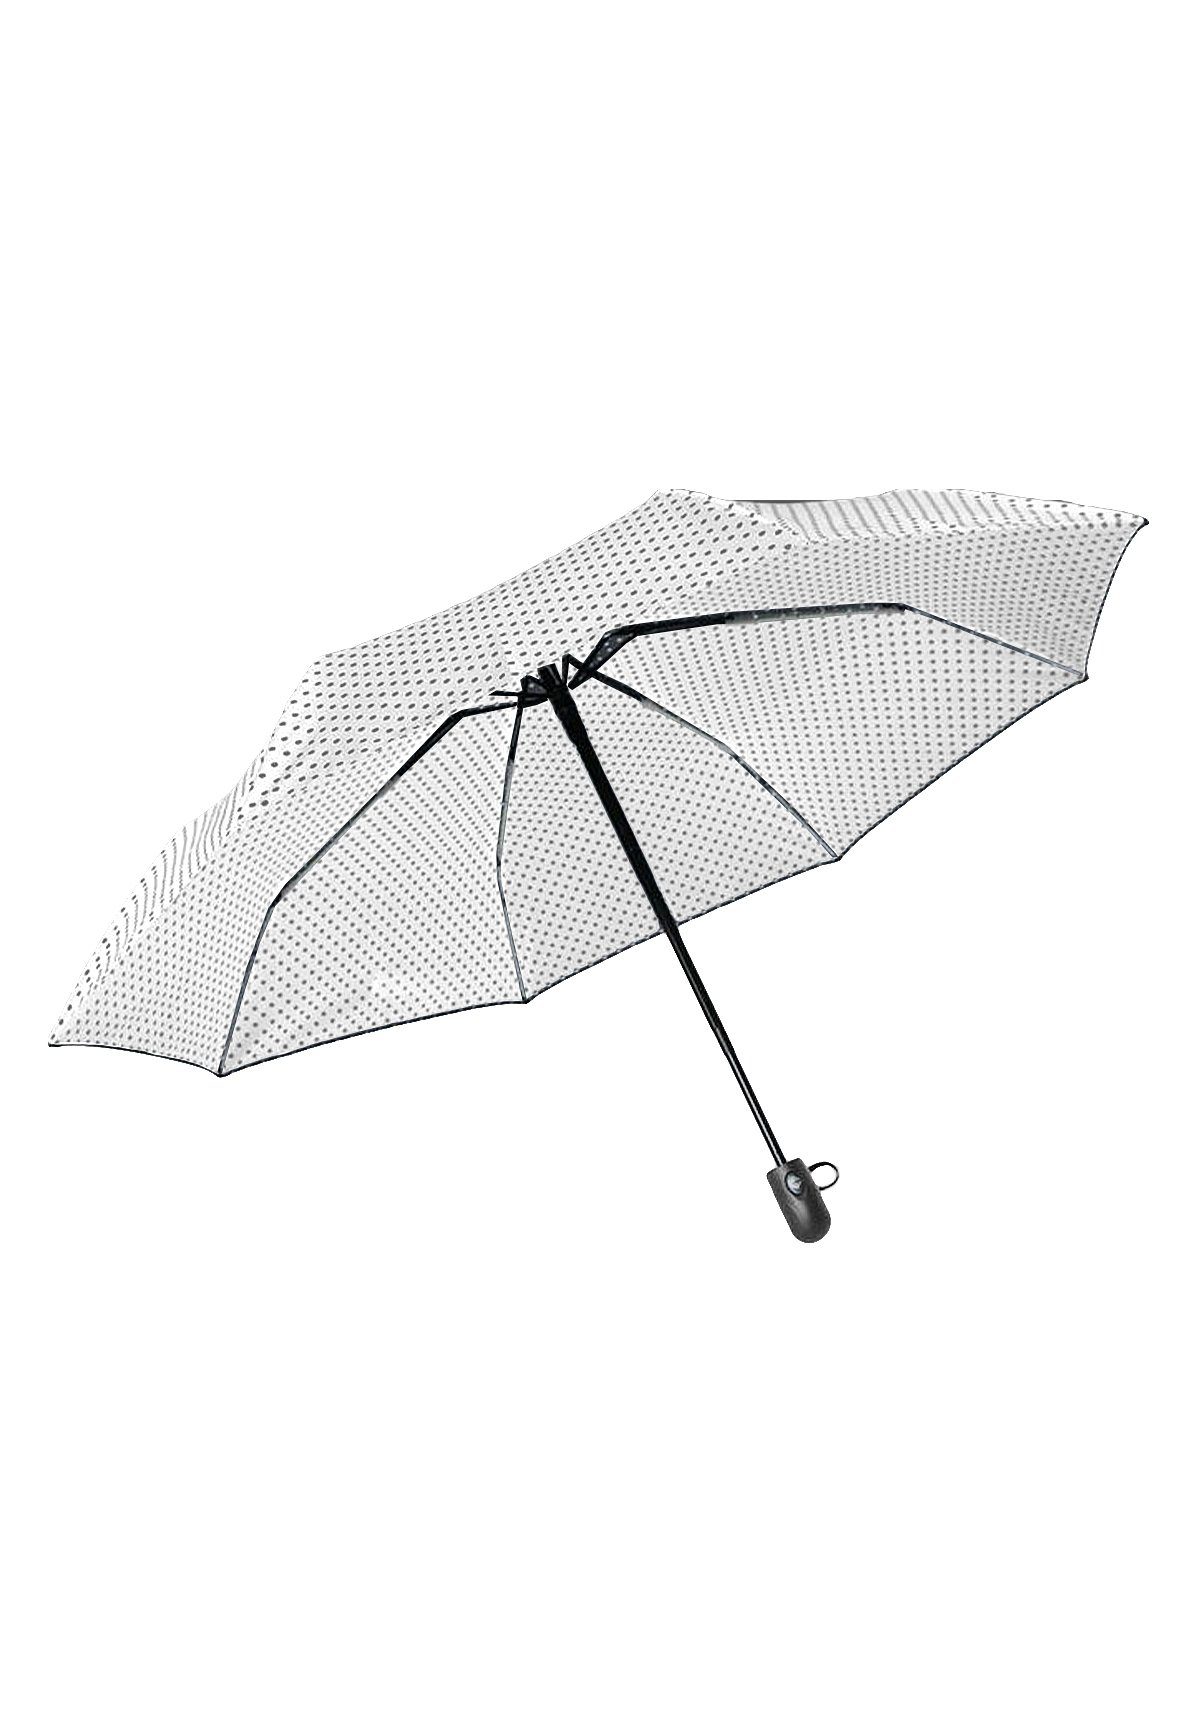 ANELY Taschenregenschirm Basic Automatik Regenschirm, 4686 in Weiß